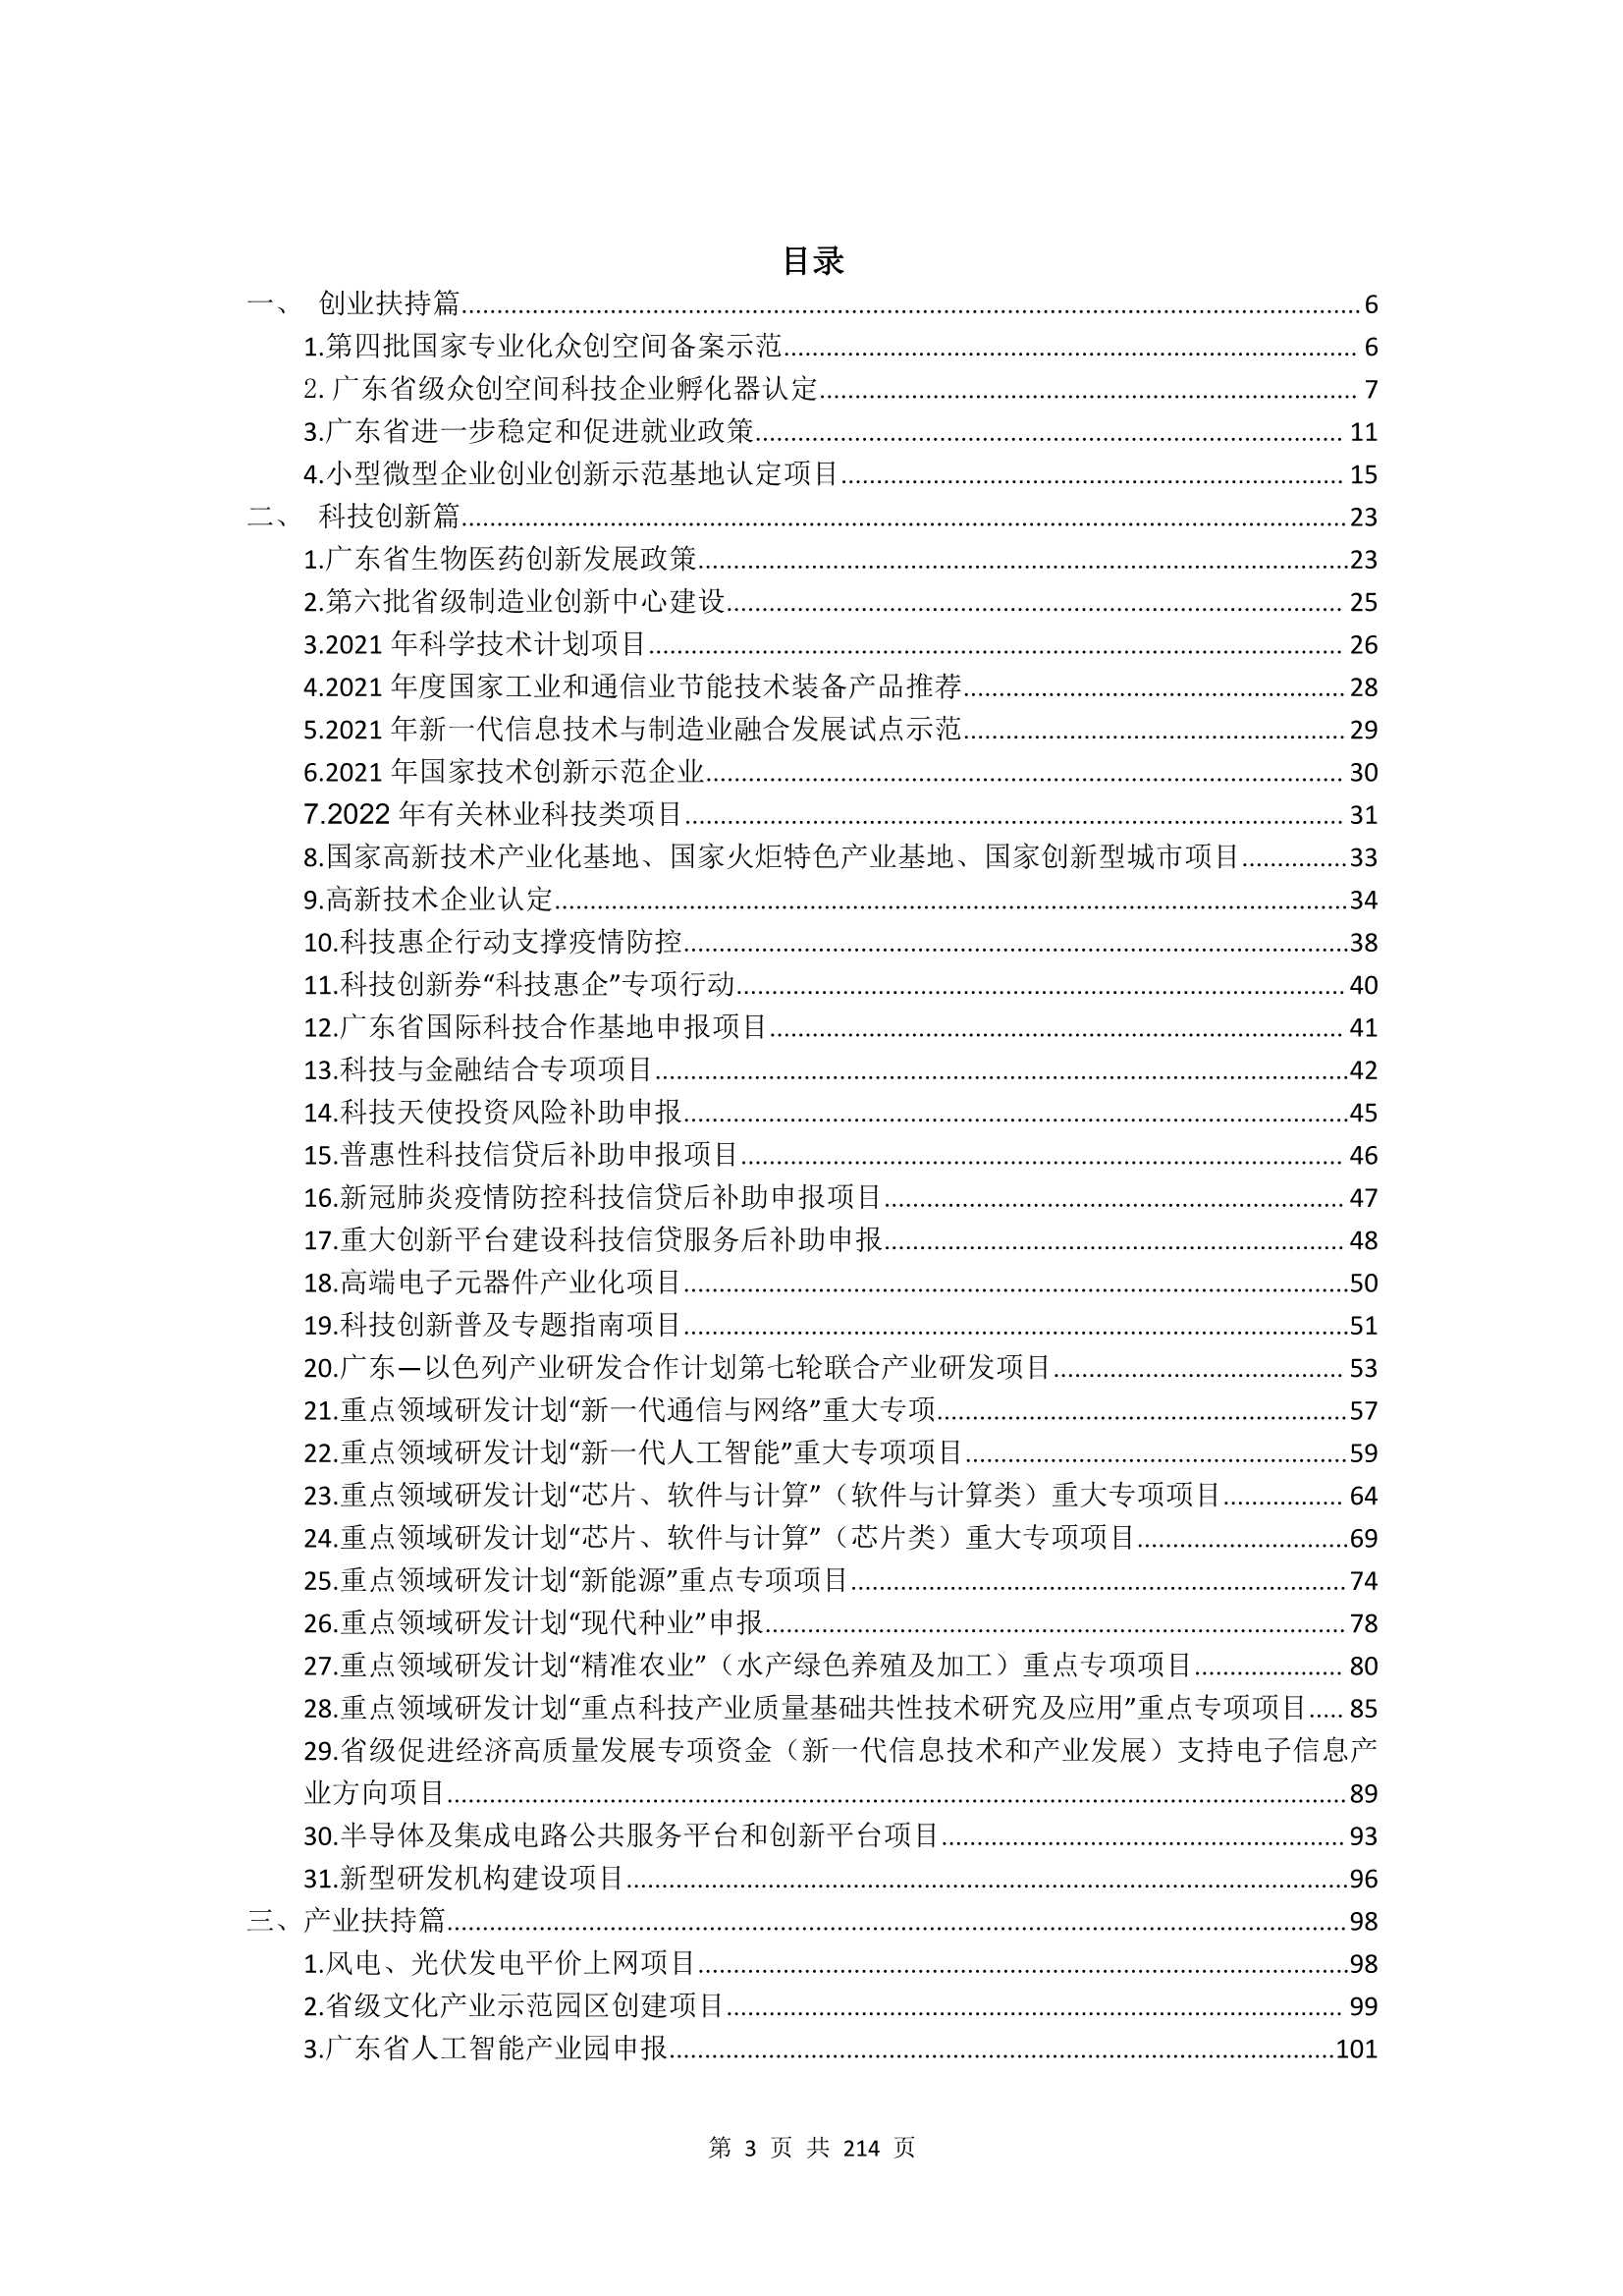 广东涉企政策汇编 2021 版-2022.01-214页